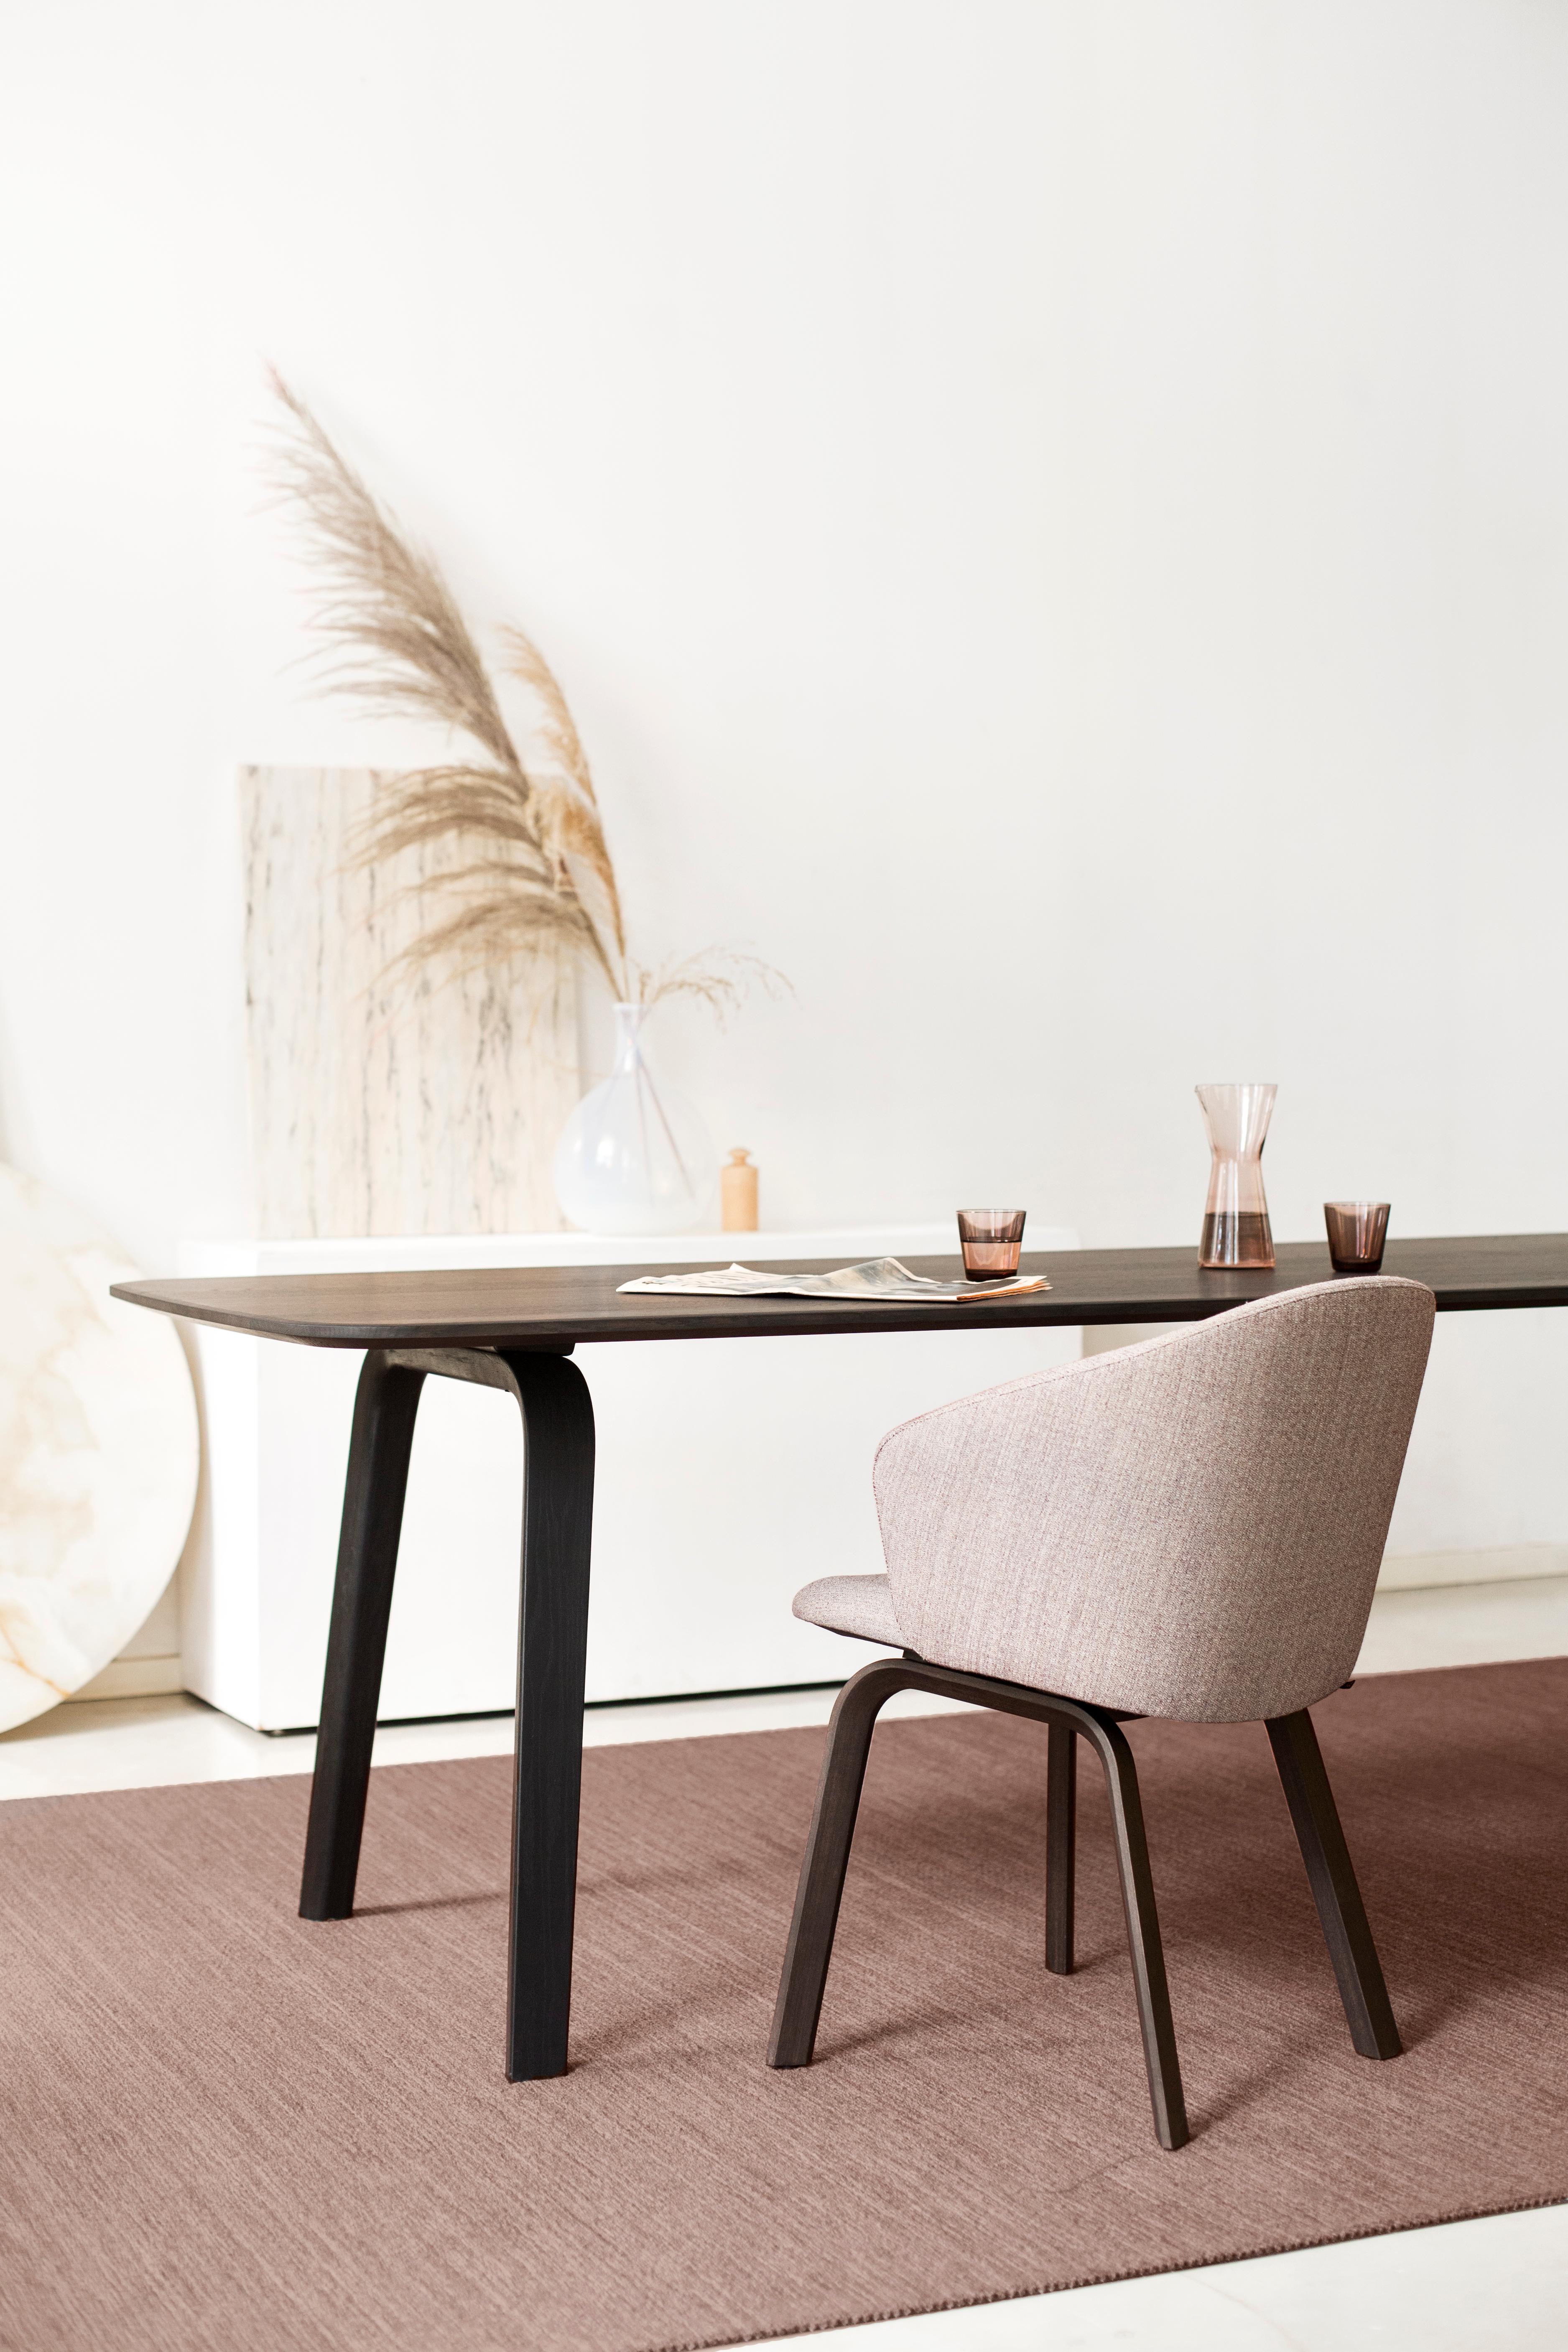 Der von Gudmundur Ludvik und Arco Design Studio entworfene Tisch ist in zwei Varianten erhältlich: Holz und Stahl. Das wesentliche Holz besteht aus einer Tischplatte aus Massivholz (Eiche oder Nussbaum) auf einem Sperrholzgestell (Buche mit